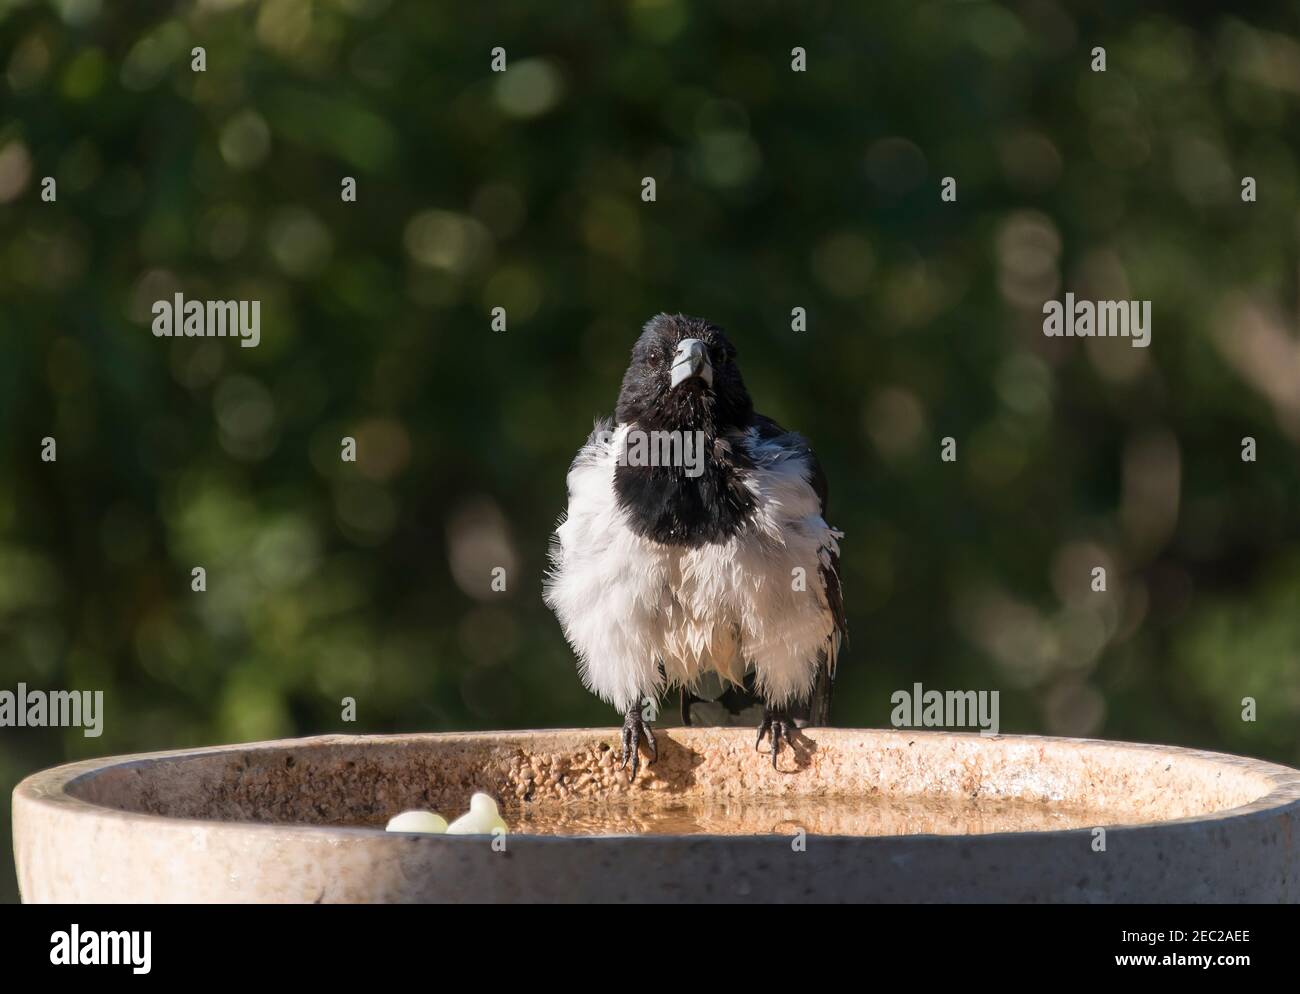 Butcherbird à pied, Cracticus nigrogularis, sur le bord du bain d'oiseau après avoir pris un bain. Secouer les plumes pour sécher. Jardin privé, Queensland Australie. Banque D'Images